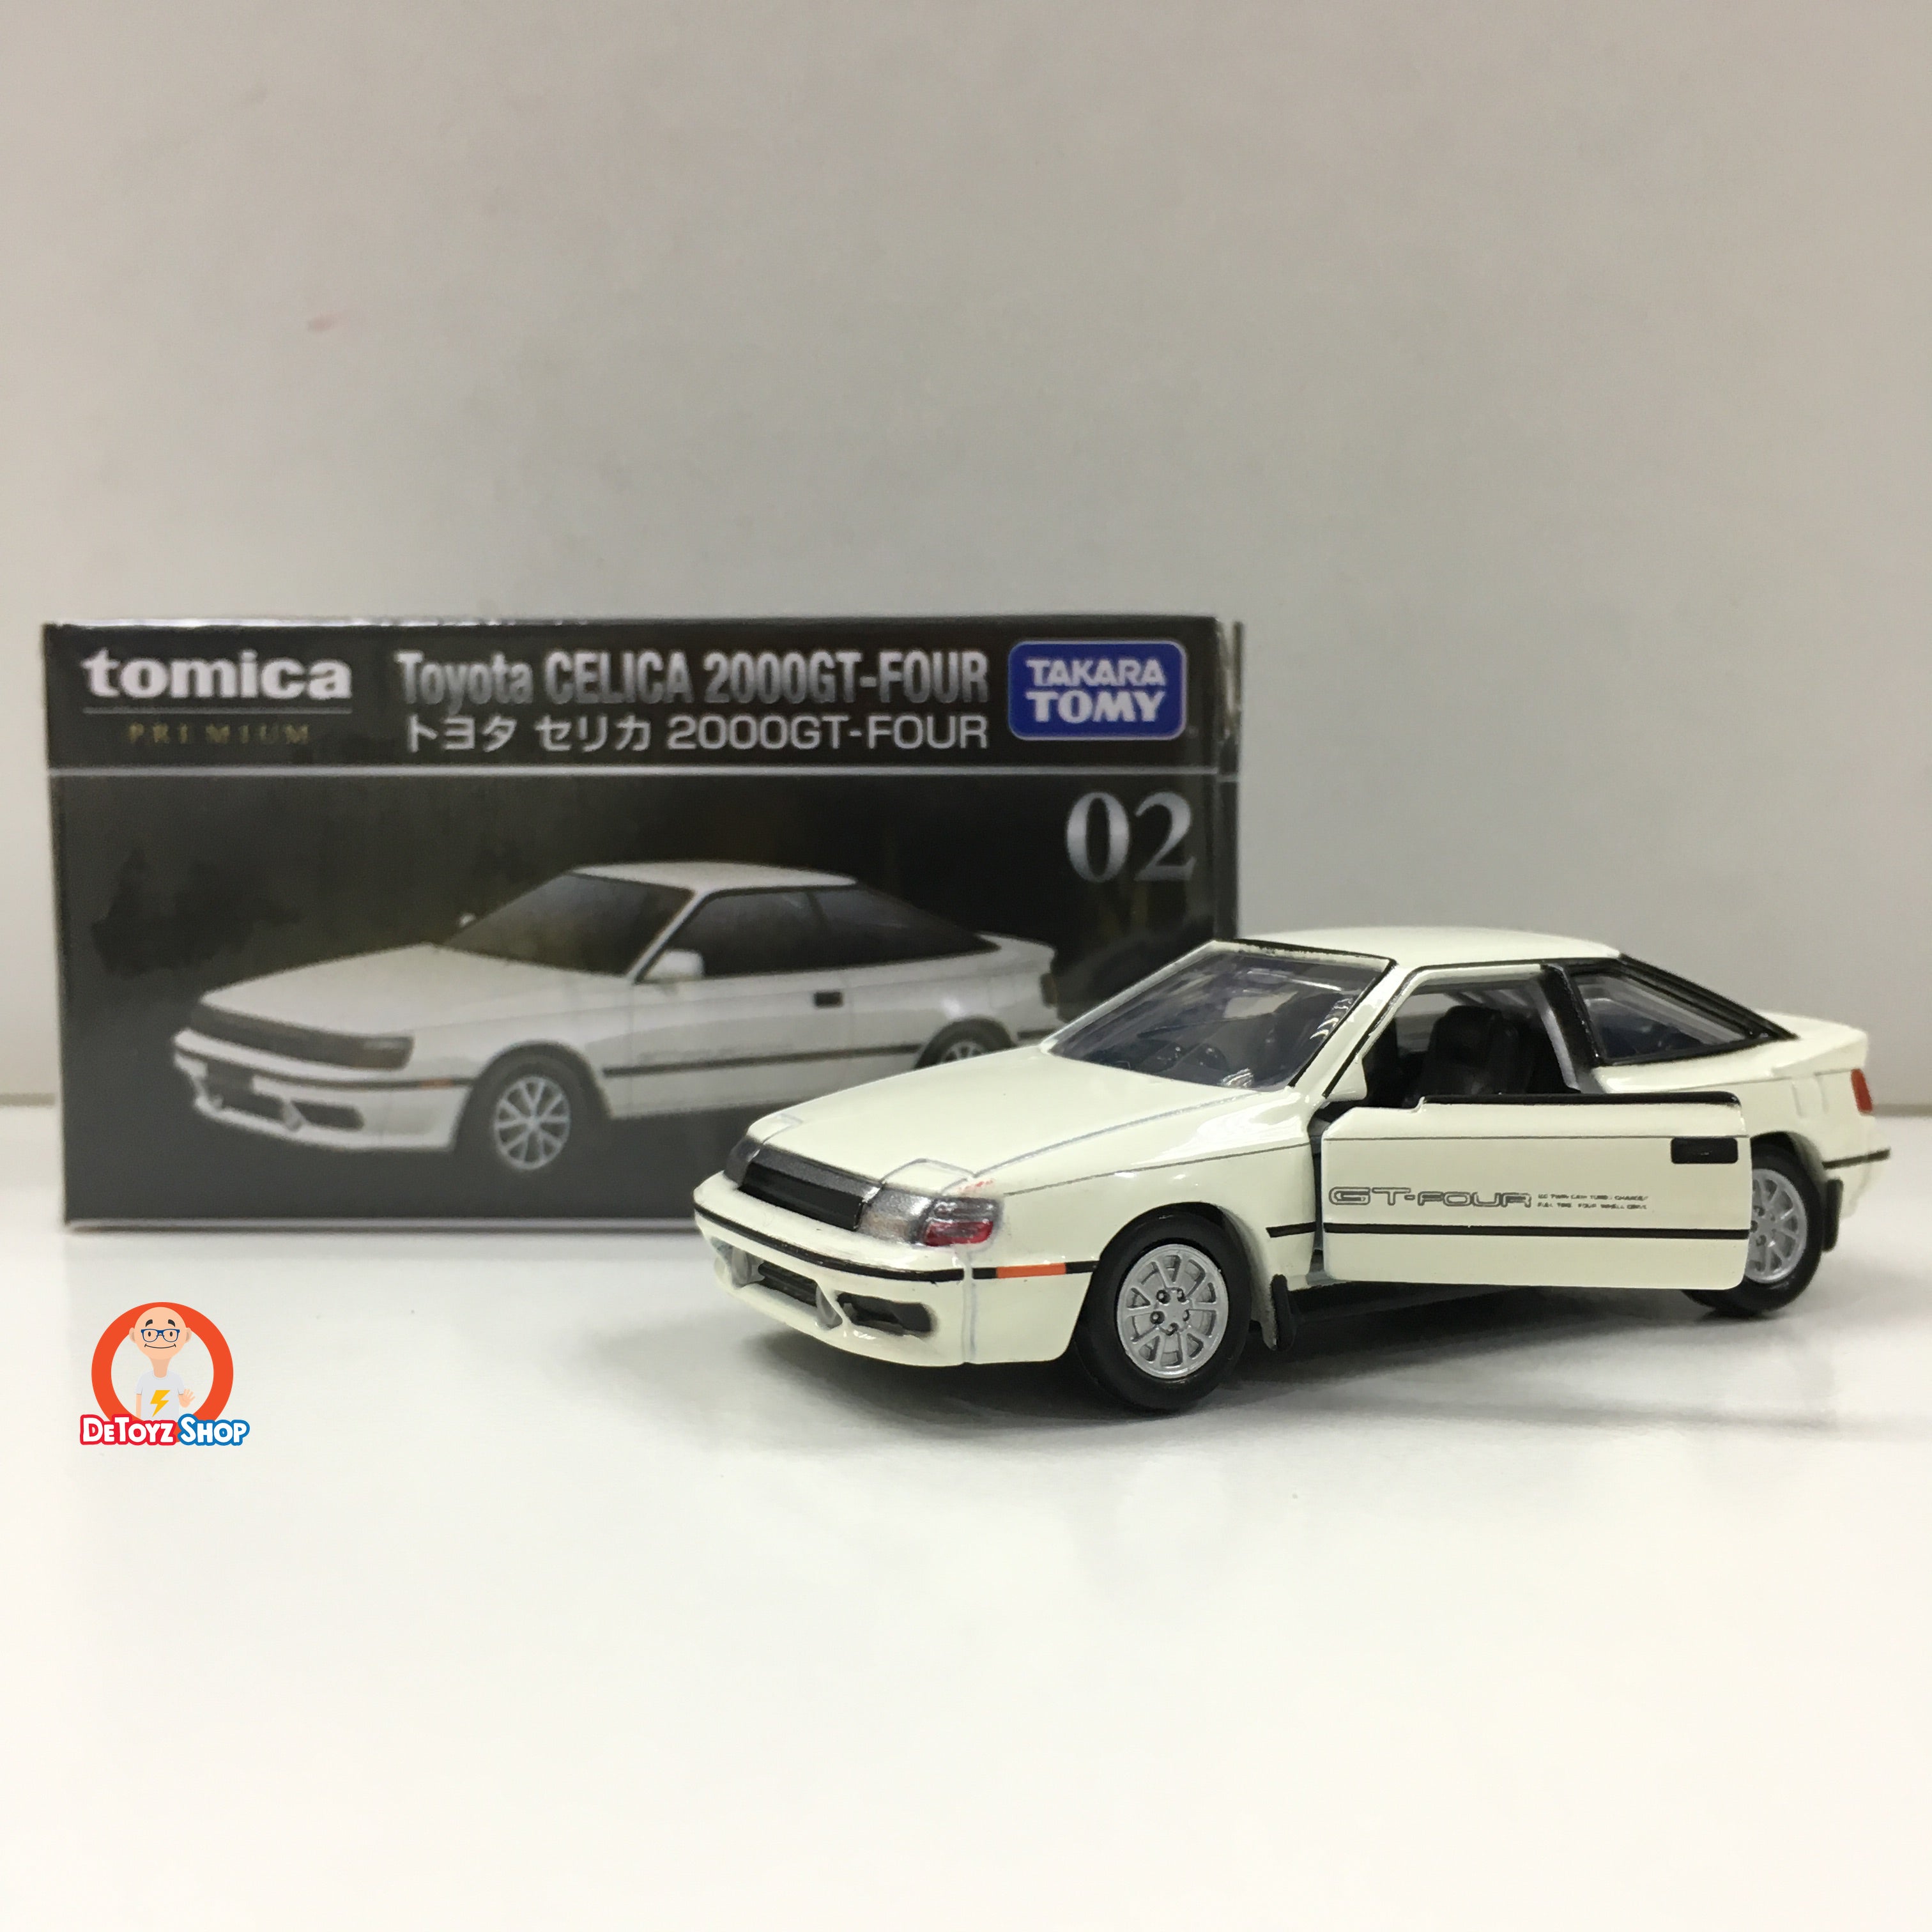 Tomica Premium 02 Toyota CELICA 2000GT-FOUR